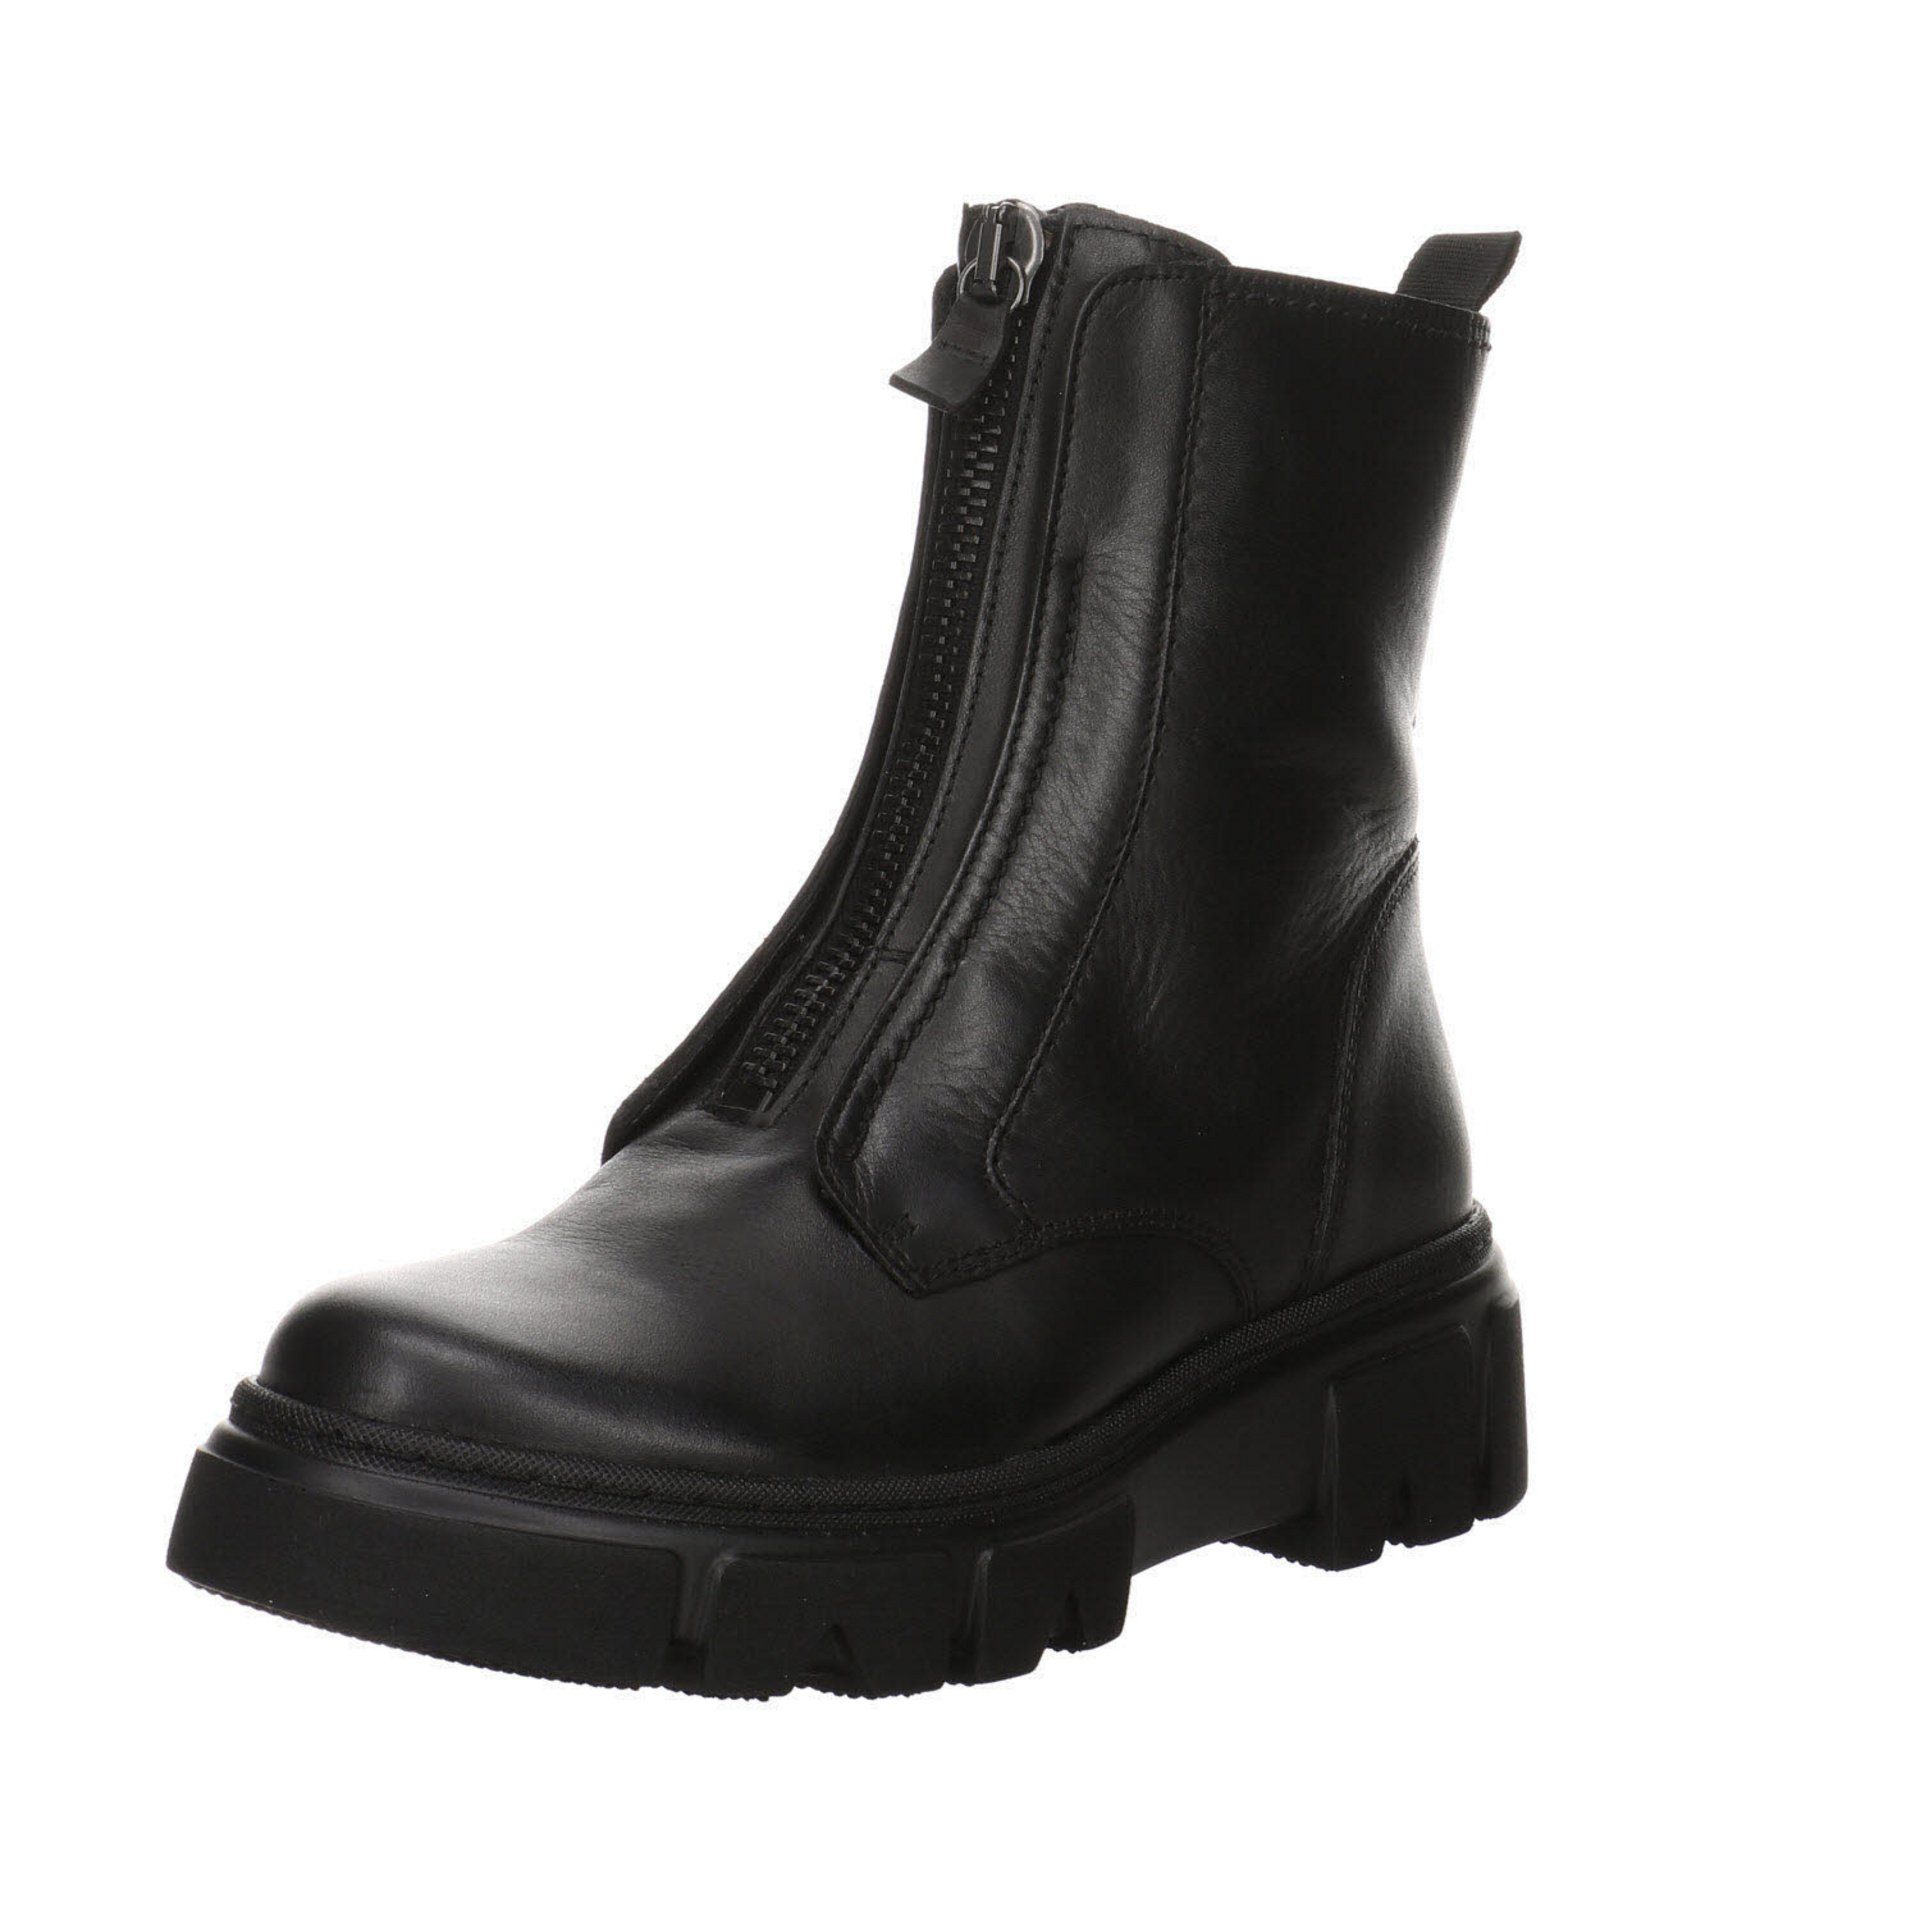 Gabor Damen Stiefeletten Schuhe Boots Elegant Freizeit Stiefelette Glattleder schwarz(altsilber)